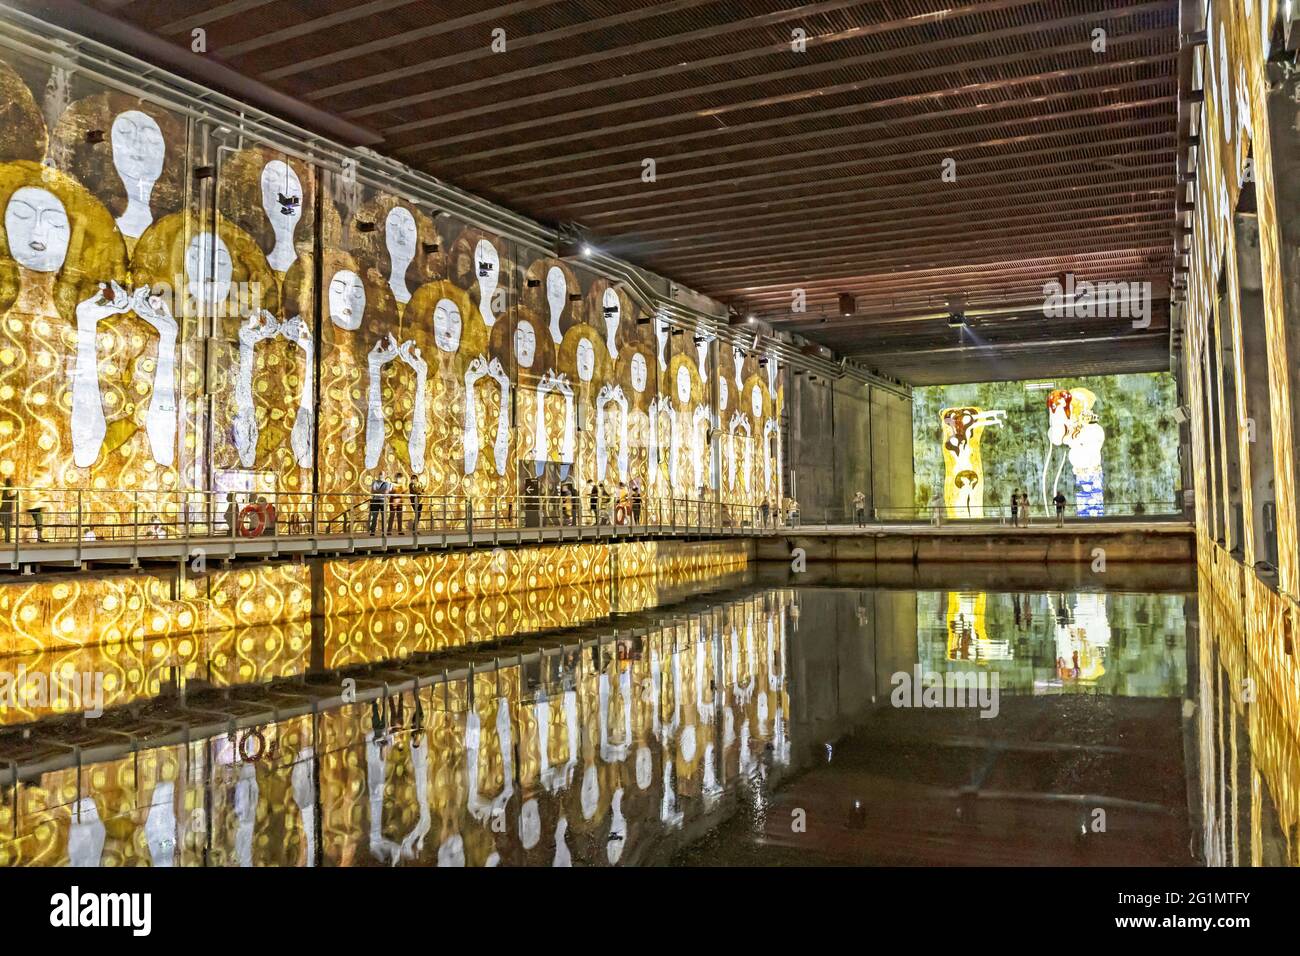 France, Gironde, Bordeaux, région classée au patrimoine mondial, Basin  afloat, base sous-marine, bassins d'exposition des lumières dédiés à Gustav  Klimt Photo Stock - Alamy